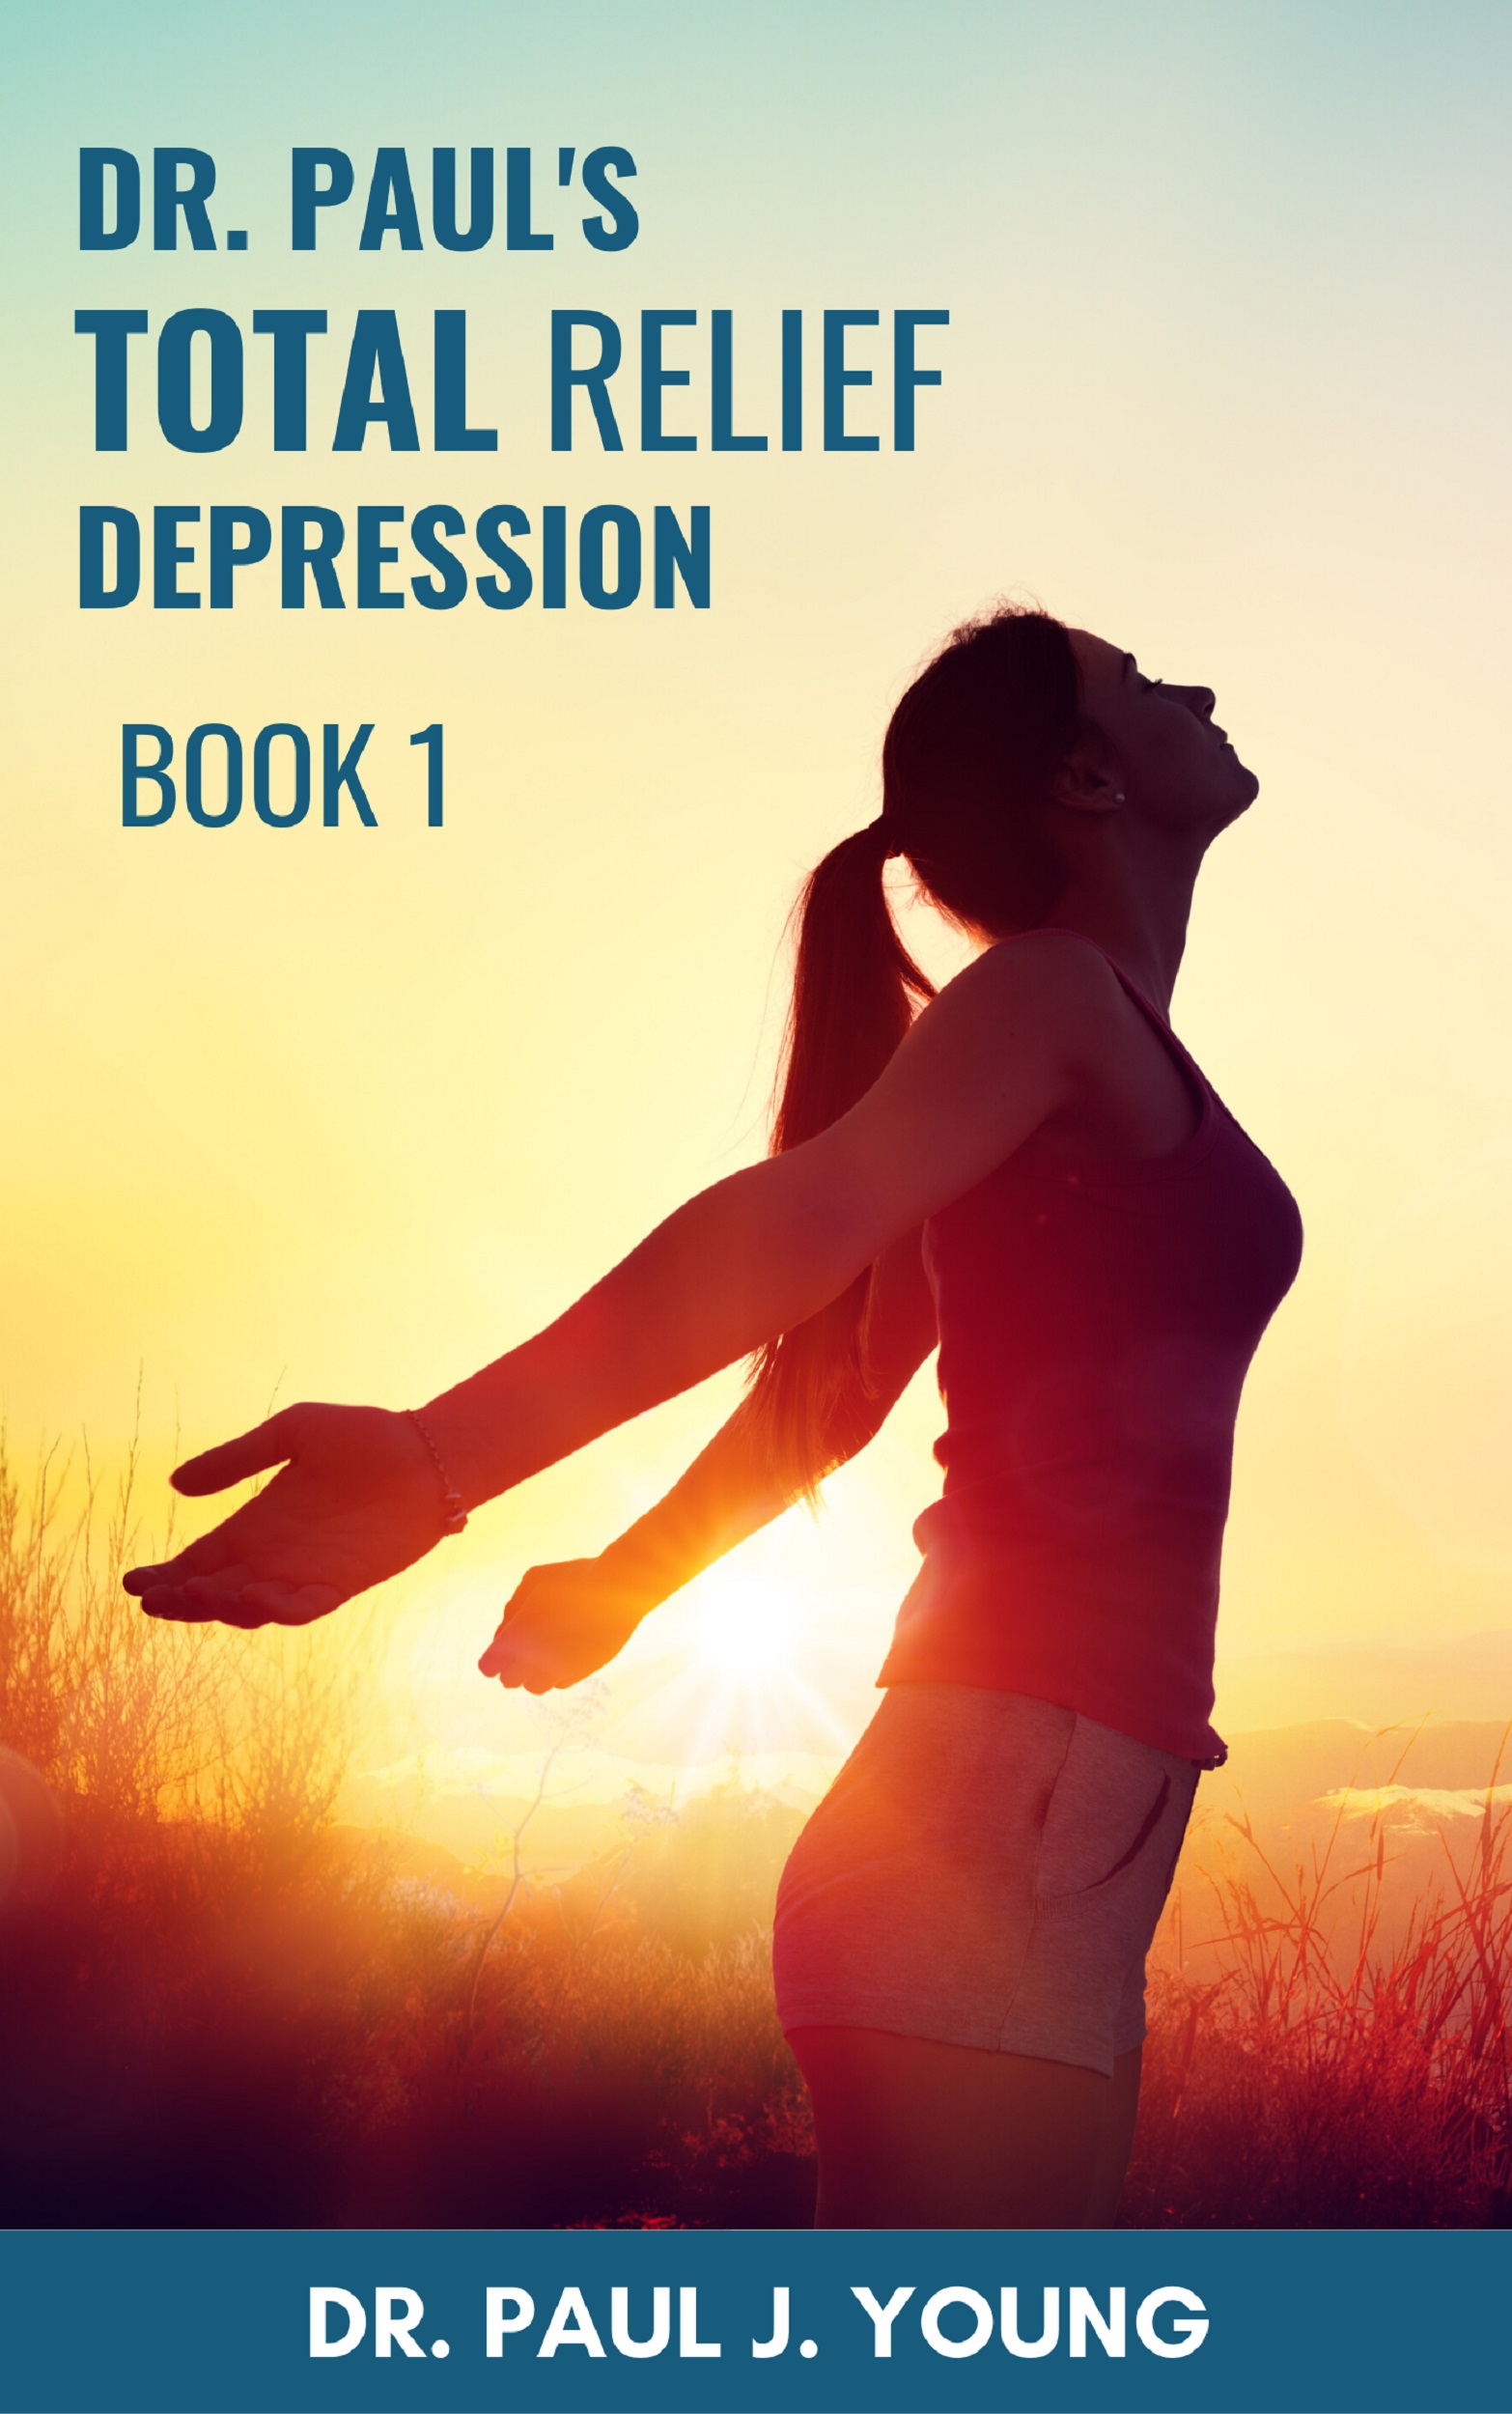 Dr. Pauls Depression Book 1 